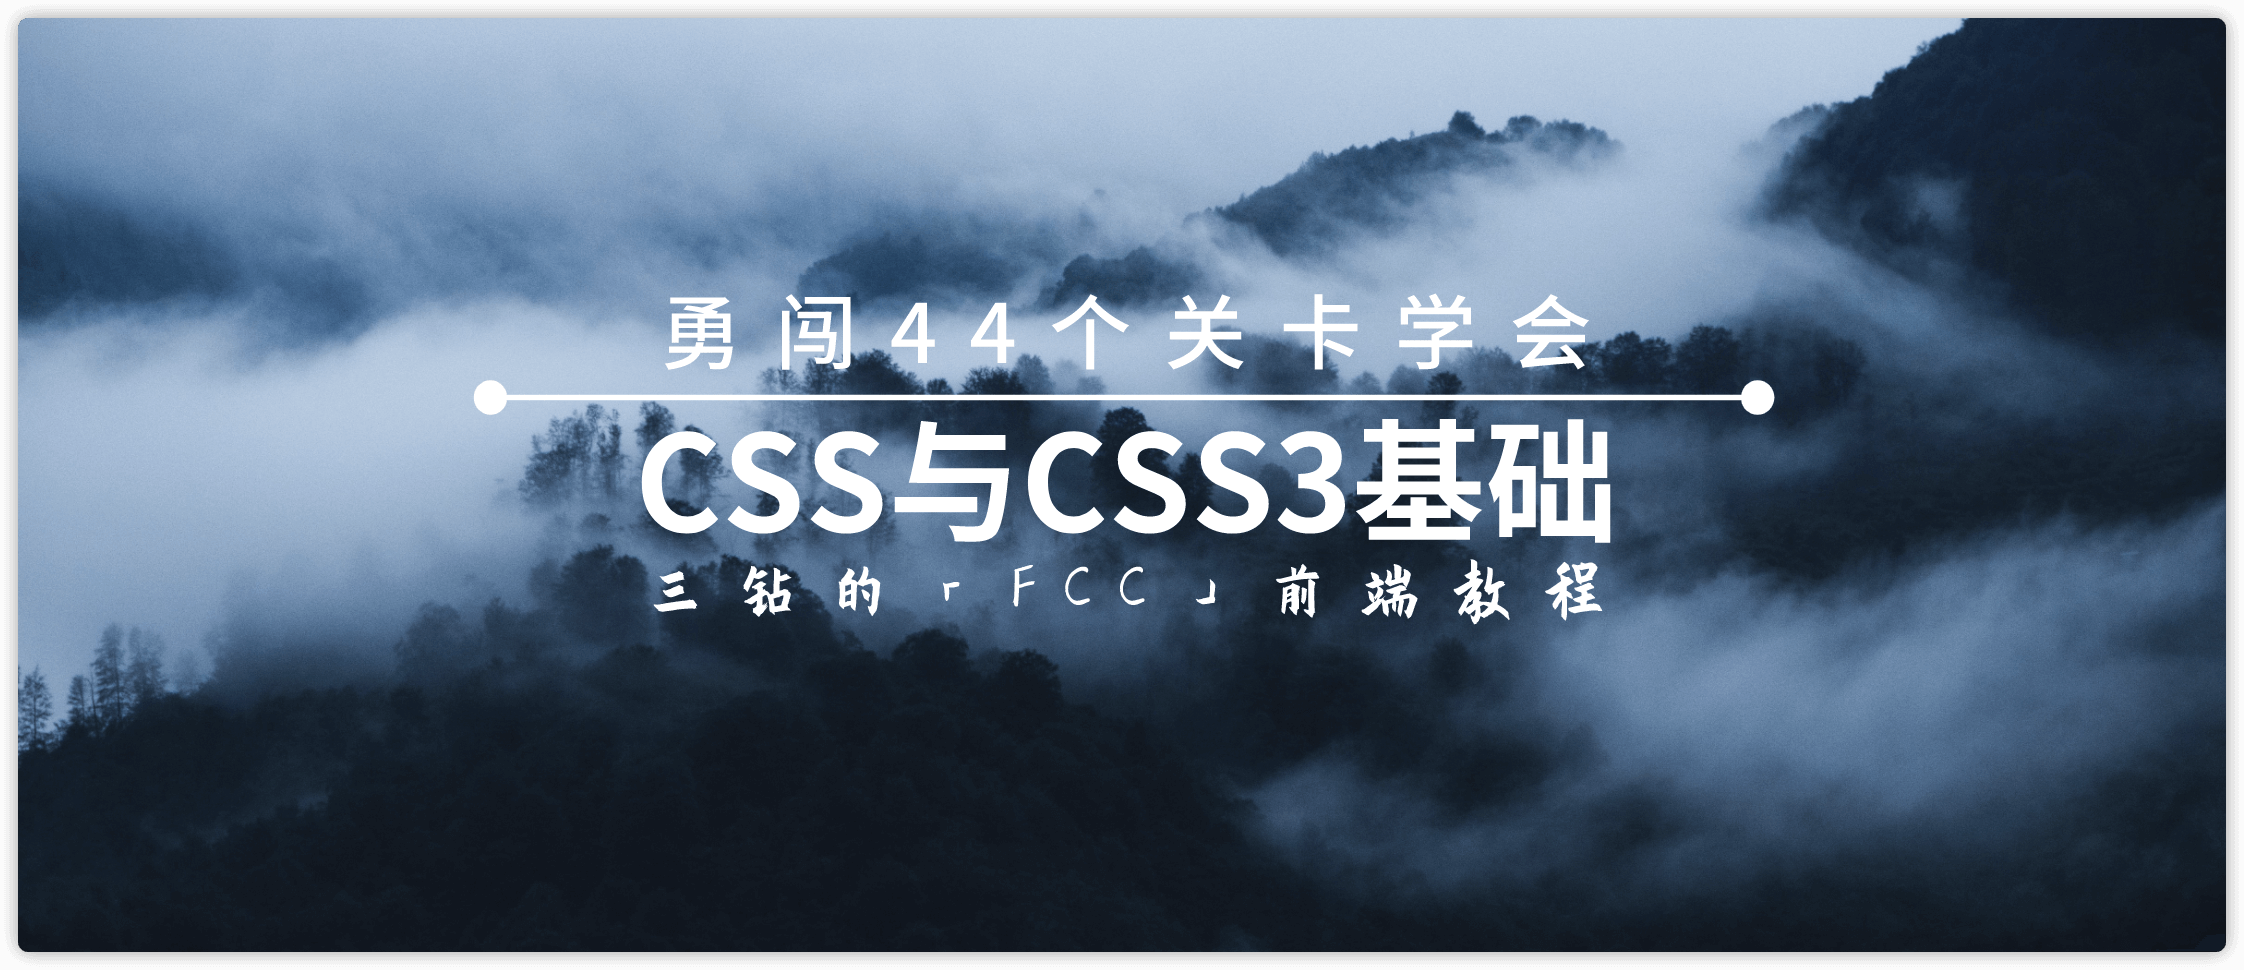 44关学习CSS与CSS3基础「一」